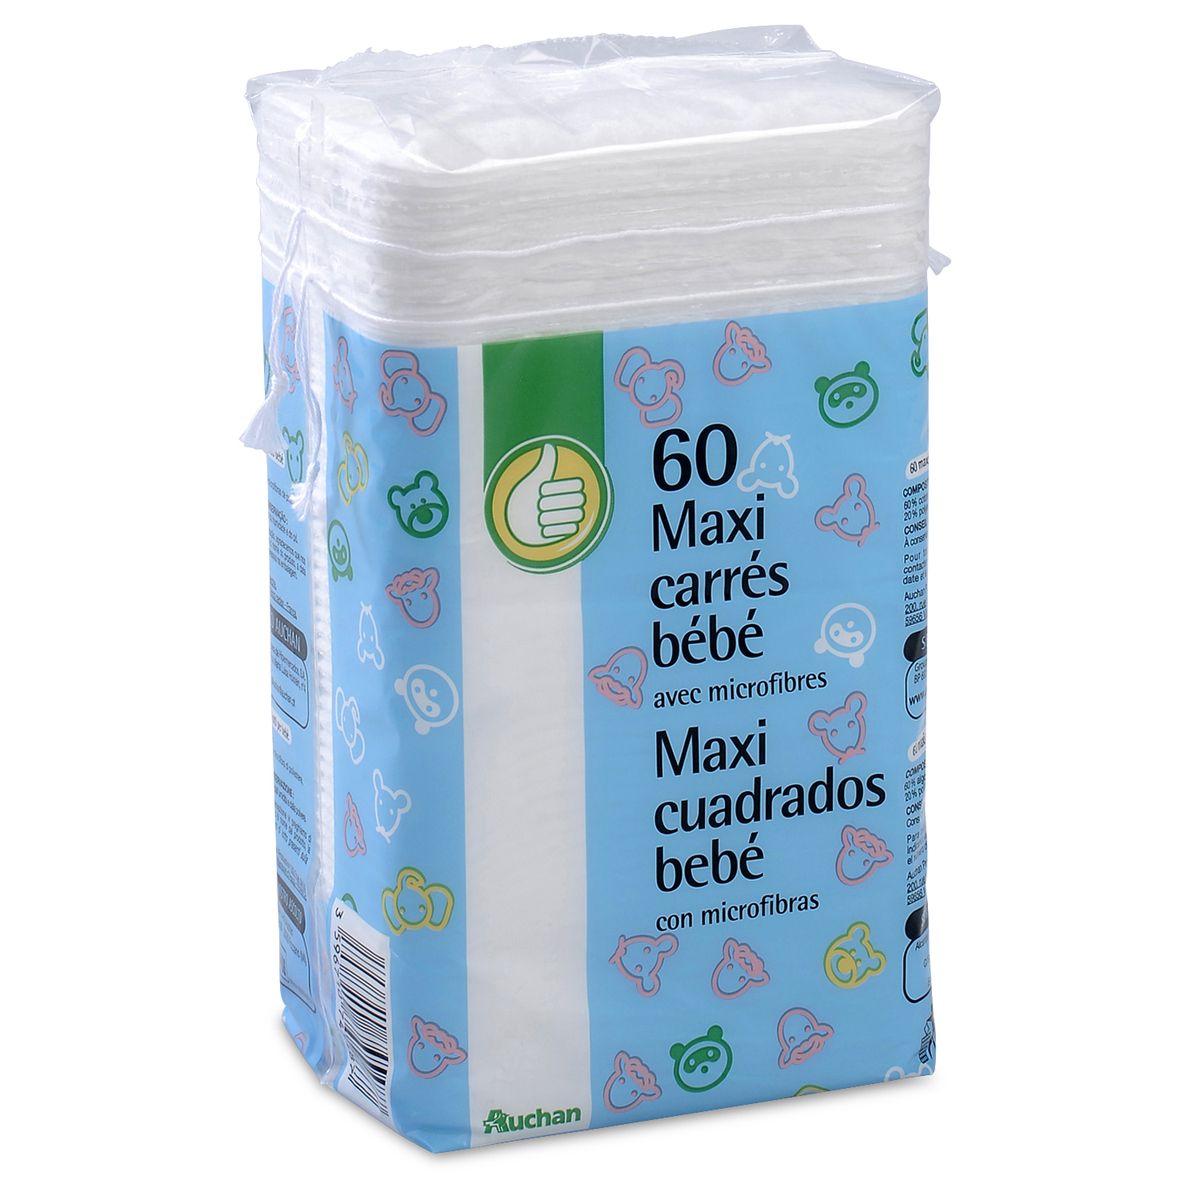 POUCE Maxi carrés coton bébé 60 cotons pas cher 